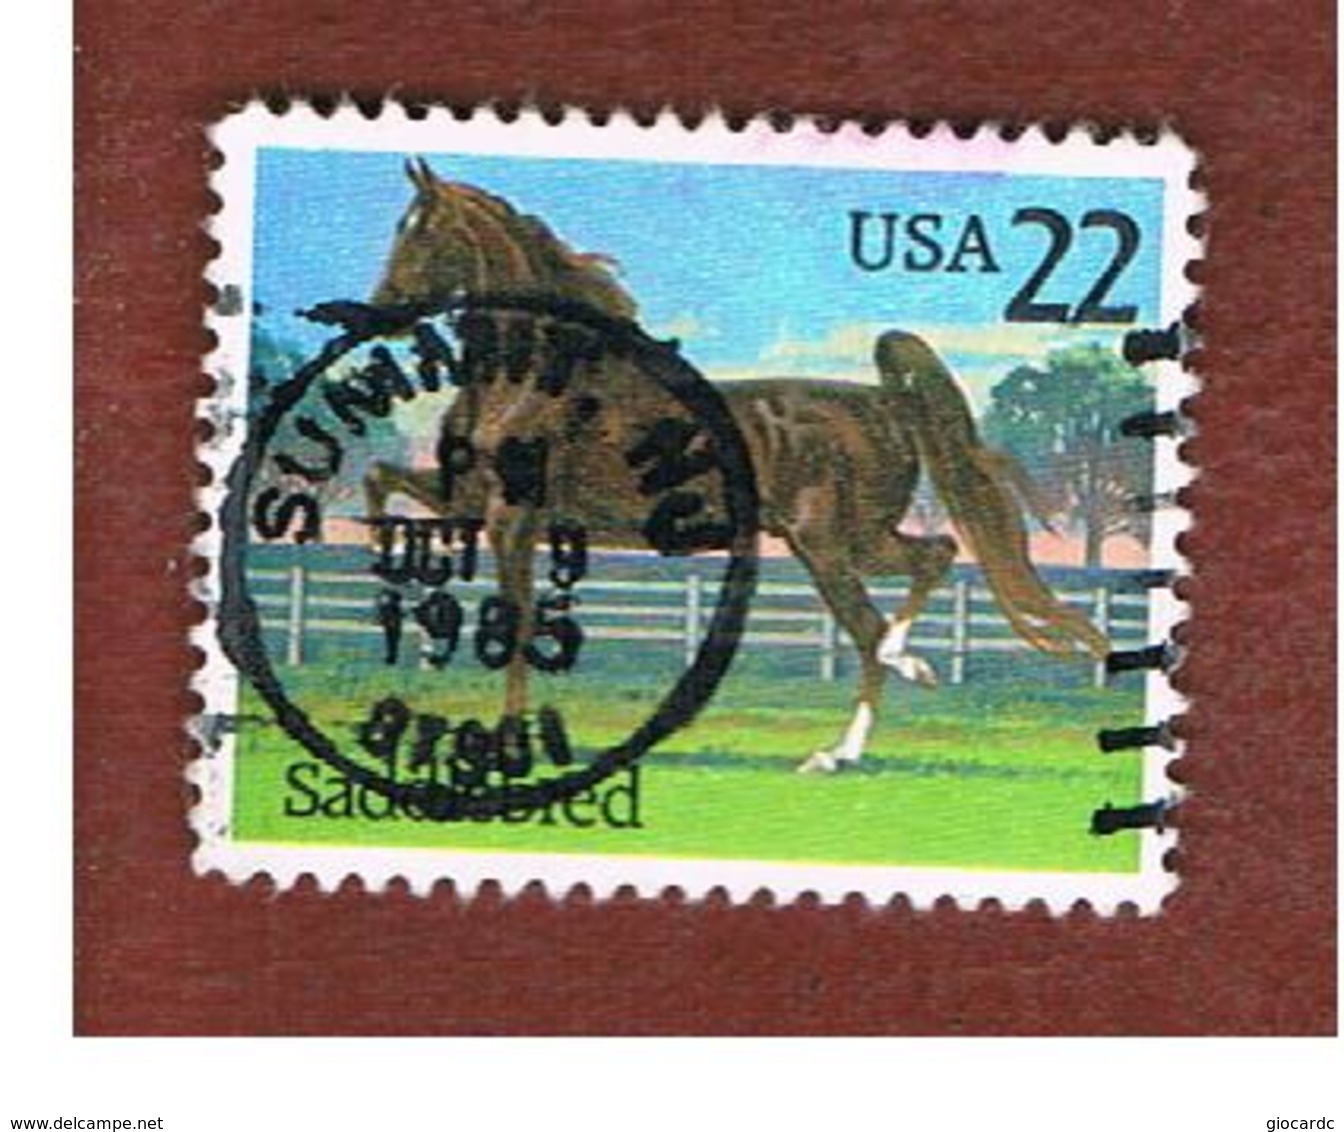 STATI UNITI (U.S.A.) - SG 2196 - 1985 HORSES: EQUUS FERUS CABALLUS  - USED - Usati